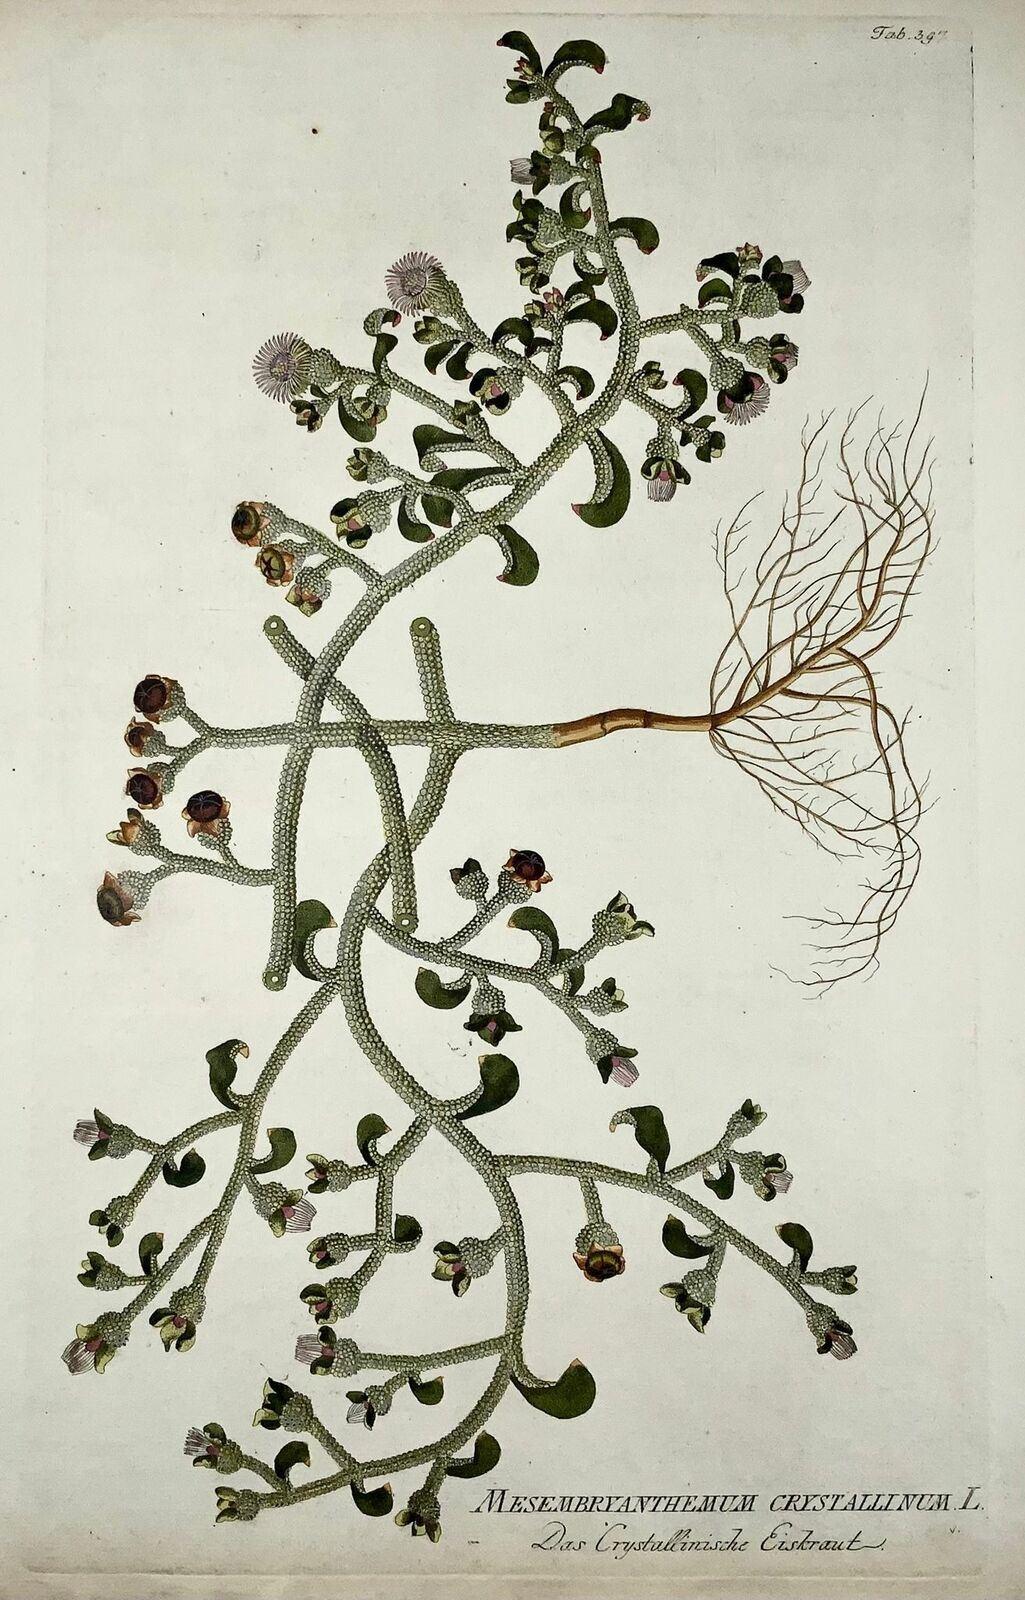 J. J. Plenck

Icones plantarum medicinalium, Wien 1788 ff.

Taille de la feuille 45 x 29 cm.

Références Nissen, BBI 1536, Great Flower Books 70 u. de Belder 281

Joseph Jacob Plenck ( Plencke dans certains ouvrages)  (1735-1807) était un médecin